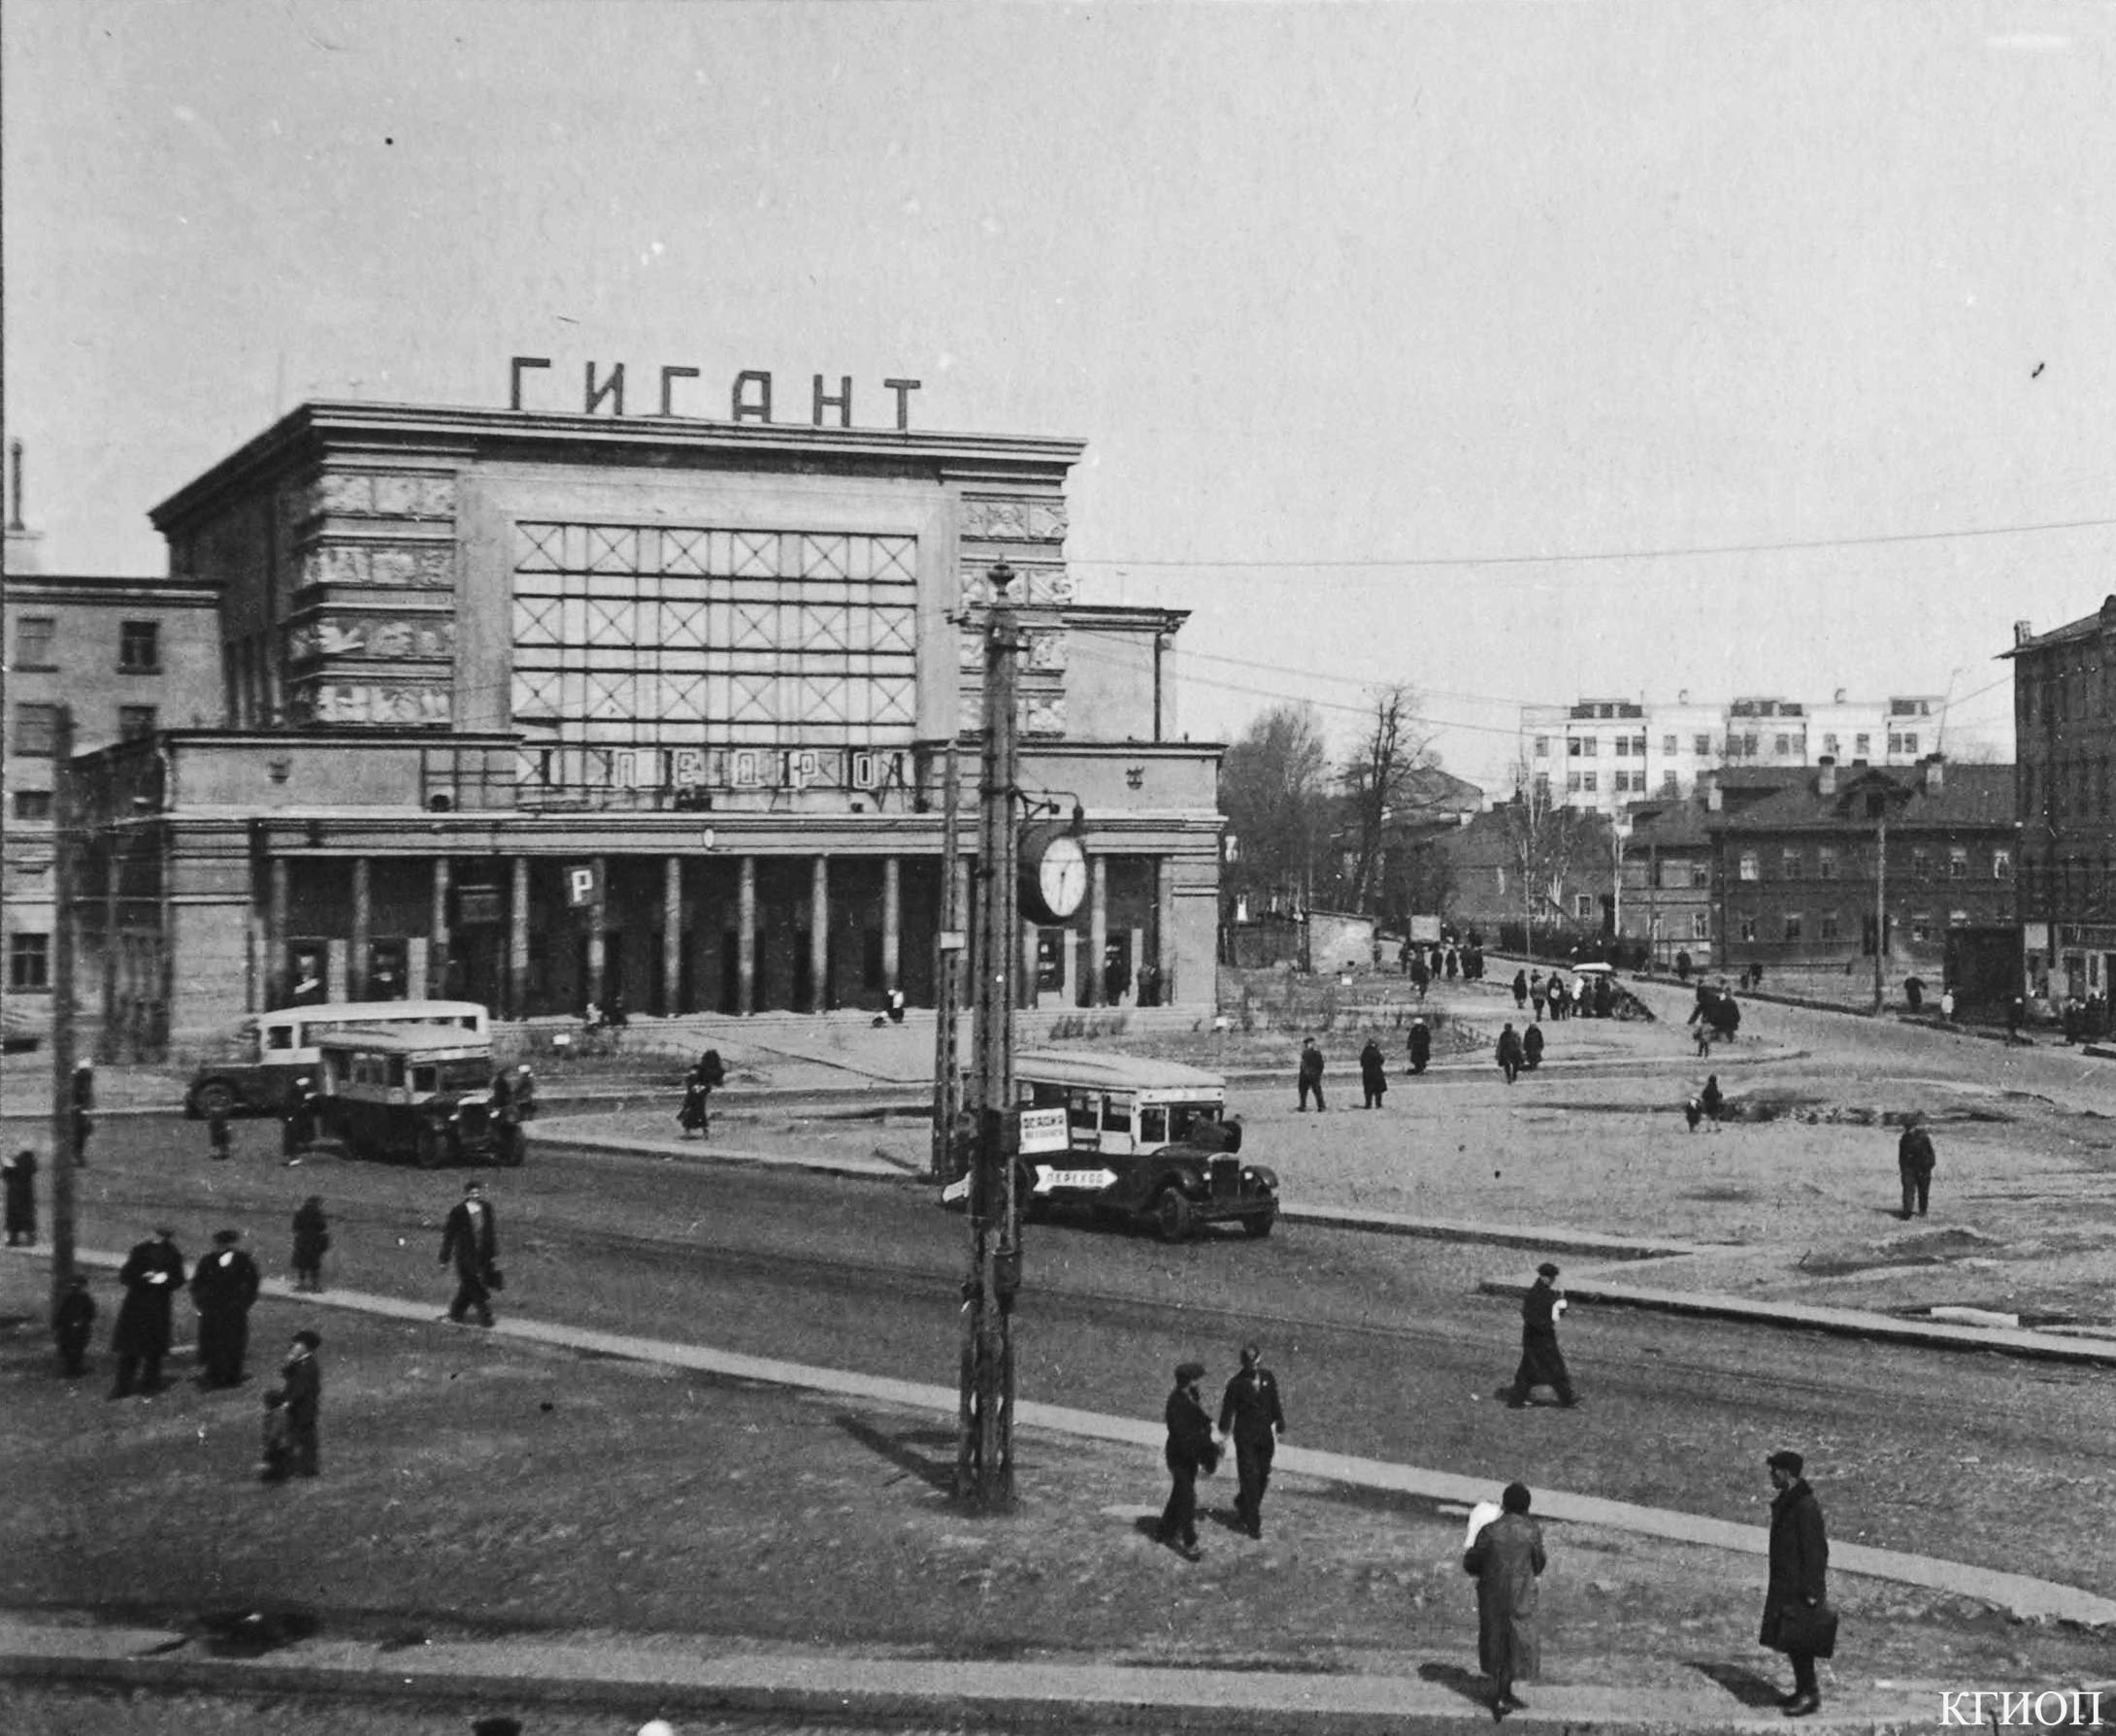 1938. Кинотеатр «Гигант». Кондратьевский пр., 44